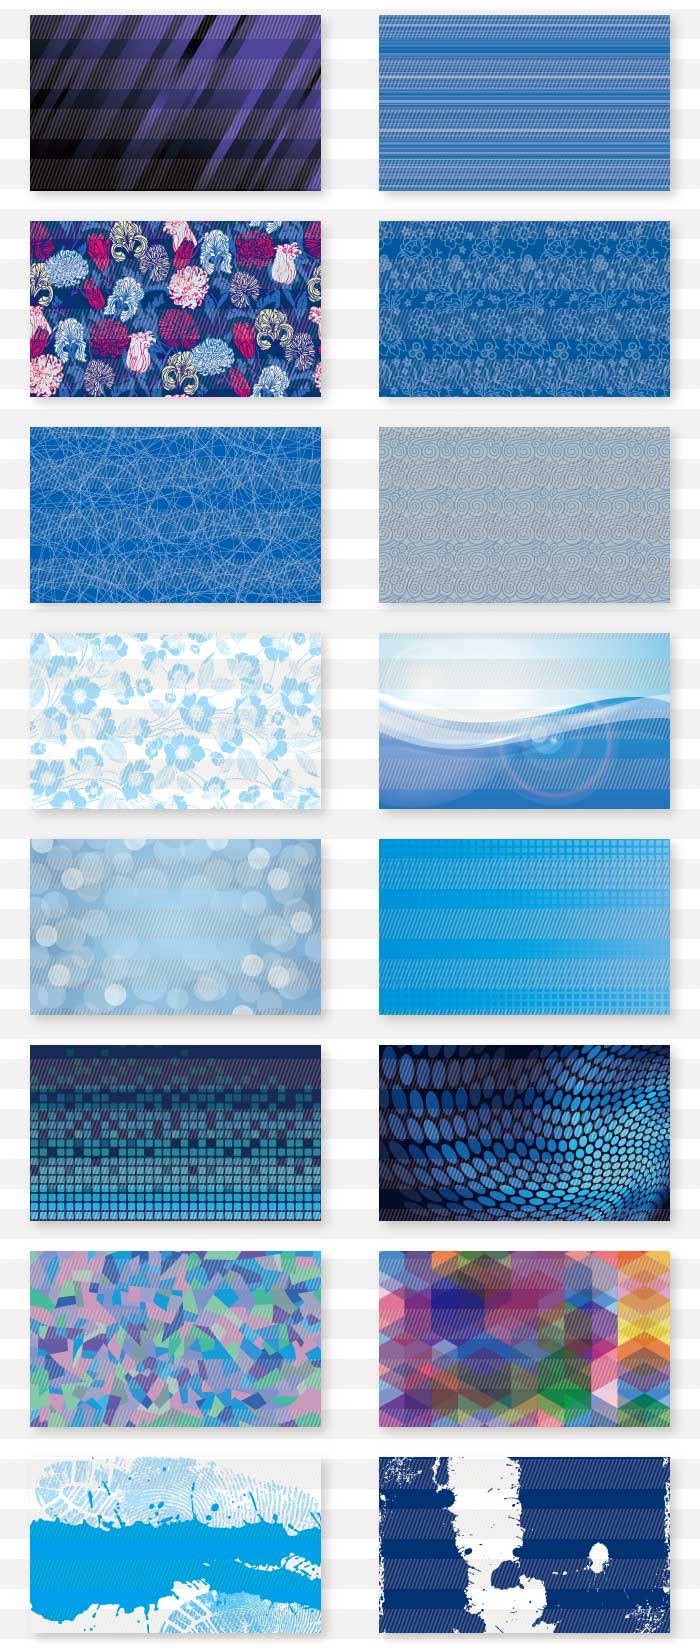 青色・紺色・寒色系のカード背景素材集1